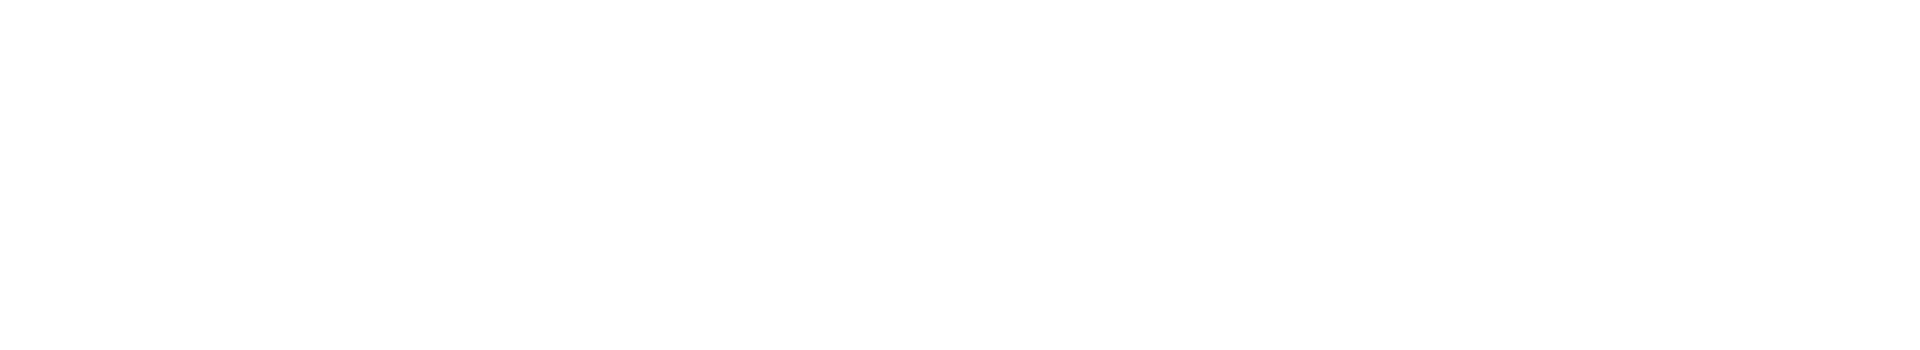 Cultwerk Marken Logo